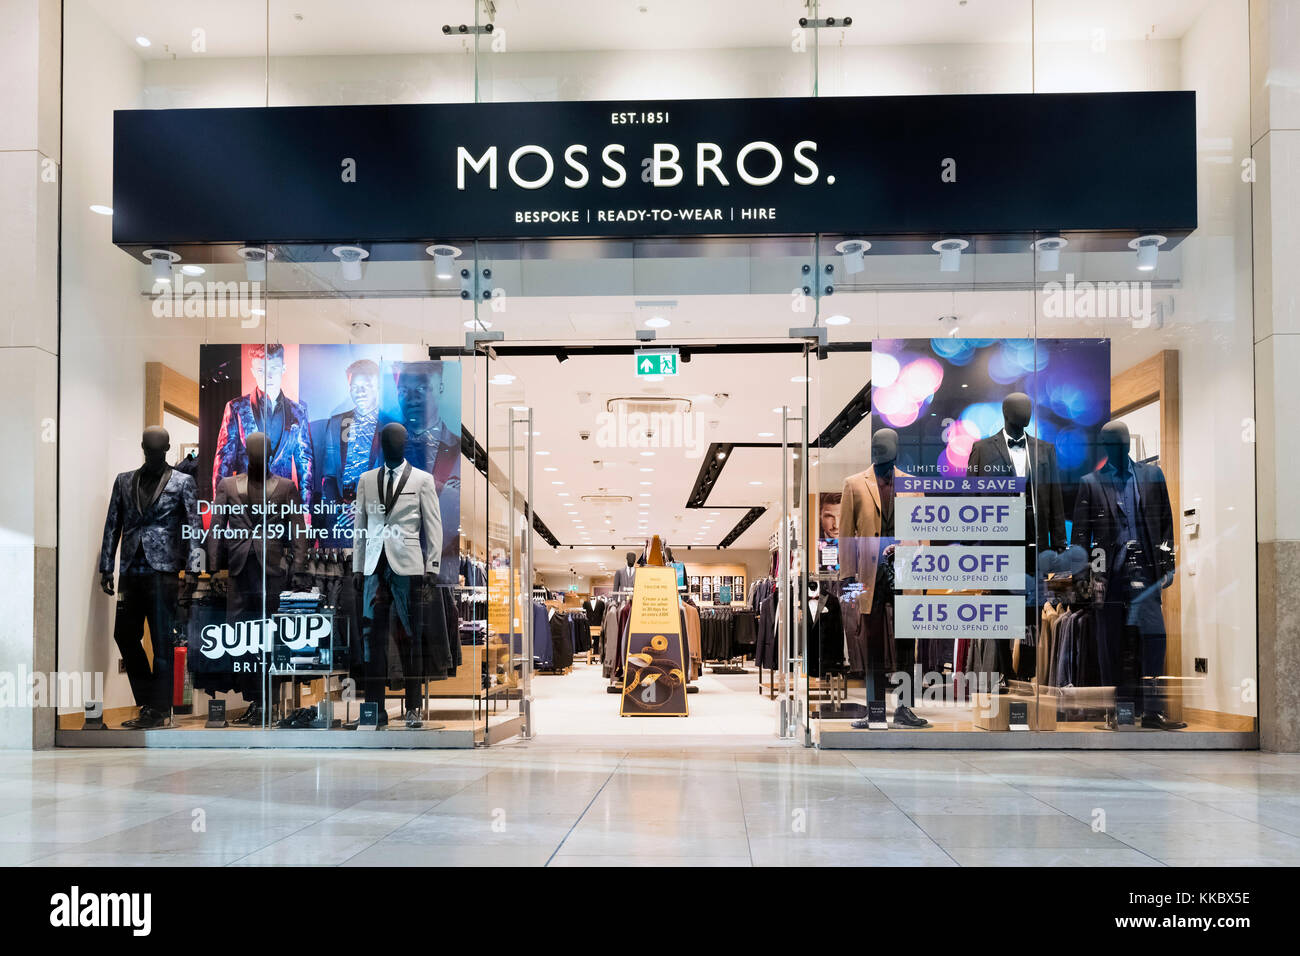 Moss Bros store, UK. Stock Photo